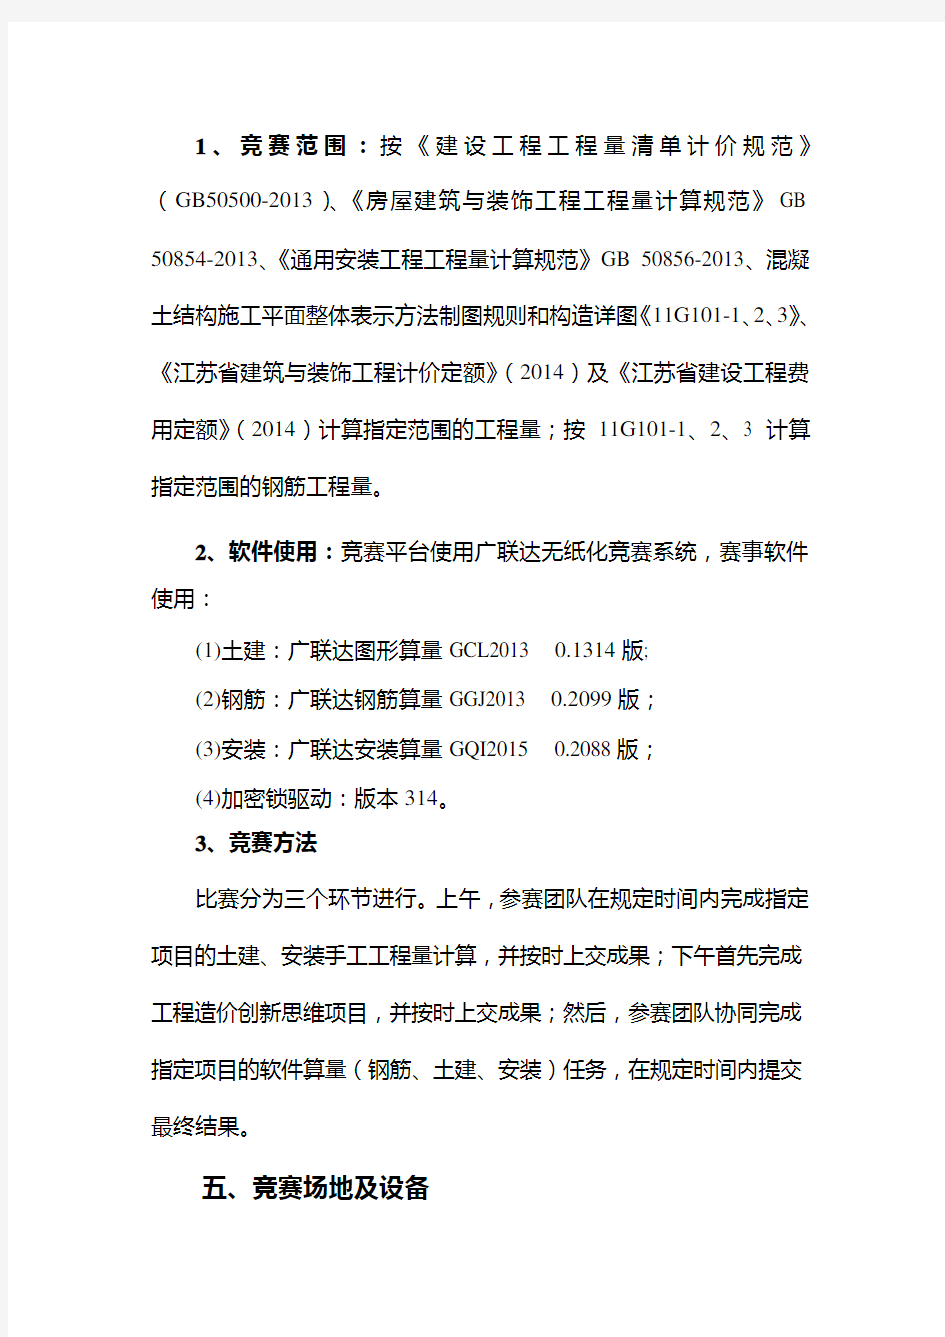 2017年江苏省高等职业院校技能大赛工程造价赛项竞赛规程